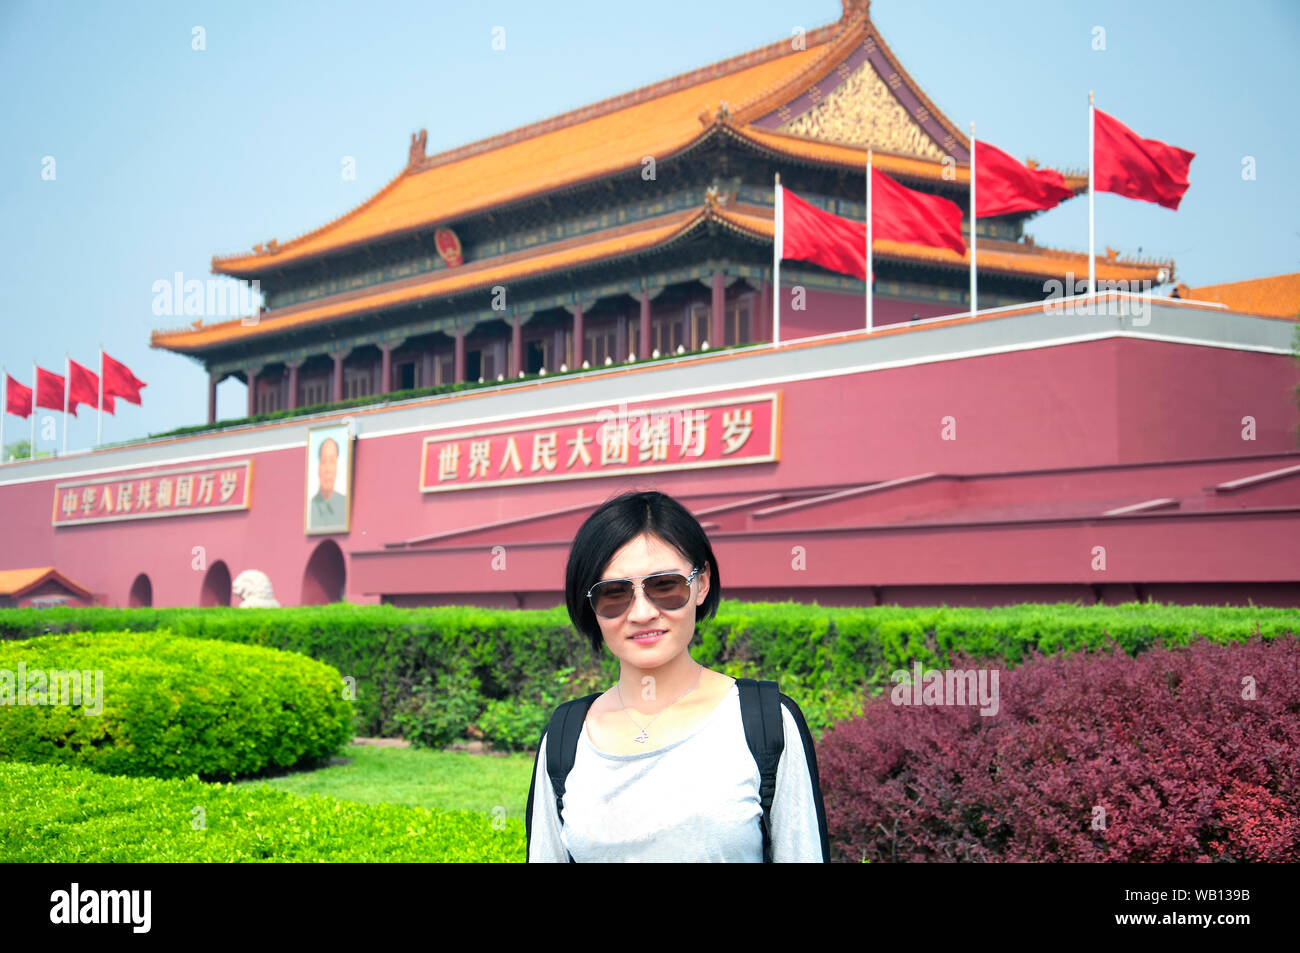 Eine chinesische Frau stand vor dem Eingang oder Tor der Harmonie der verbotenen Palast in Peking, China an einem sonnigen Tag. Chinesische Übersetzung ist t Stockfoto